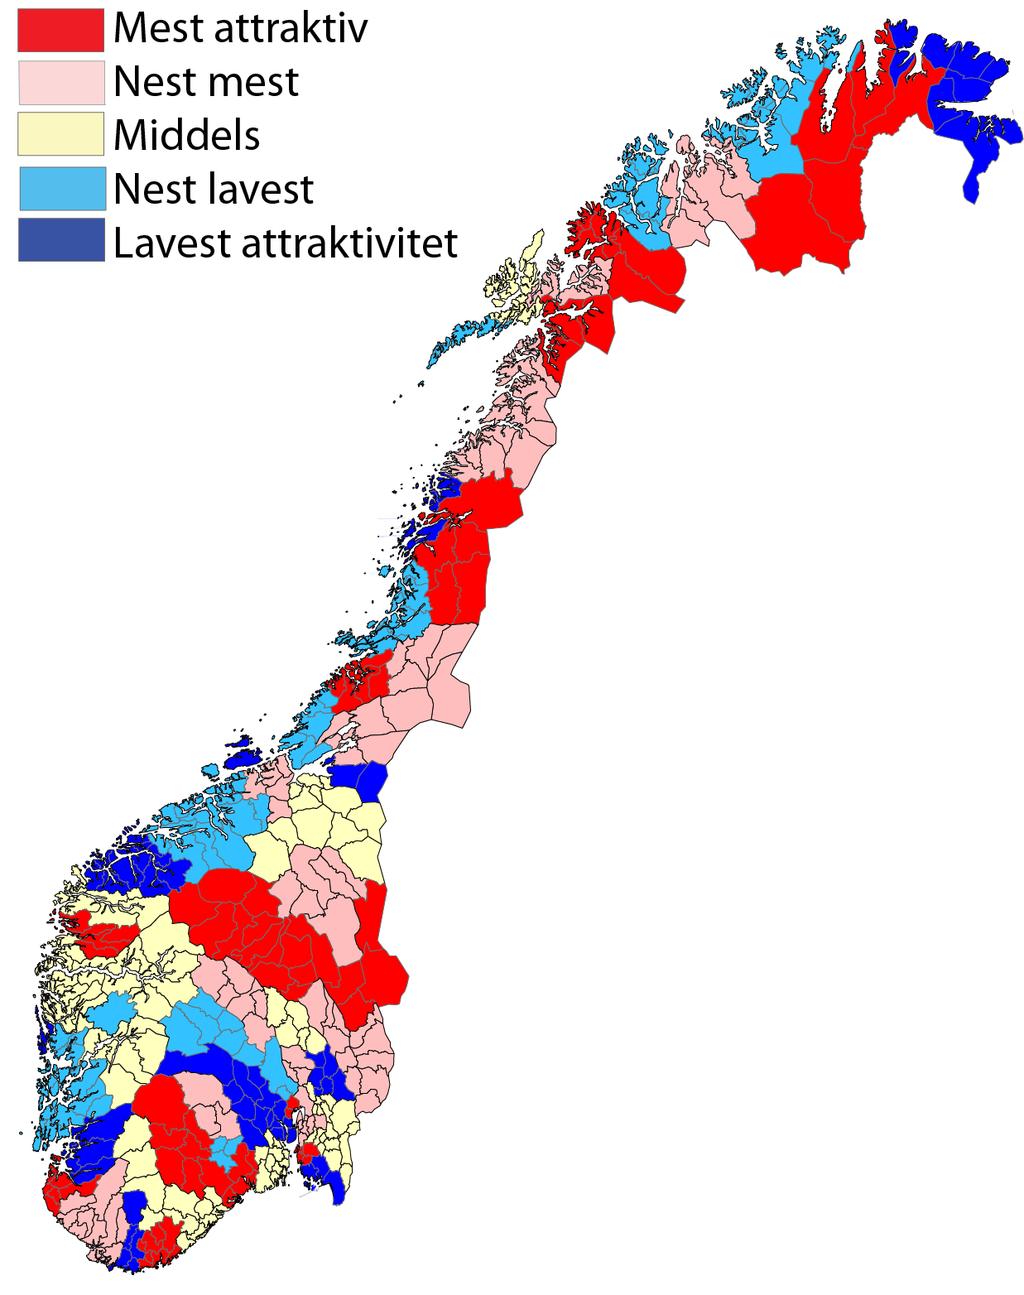 Mest attraktive regioner samlet 2008-2013: 1 Hitra/Frøya 2 Øvre Romerike 3 Kongsberg/Numedal 4